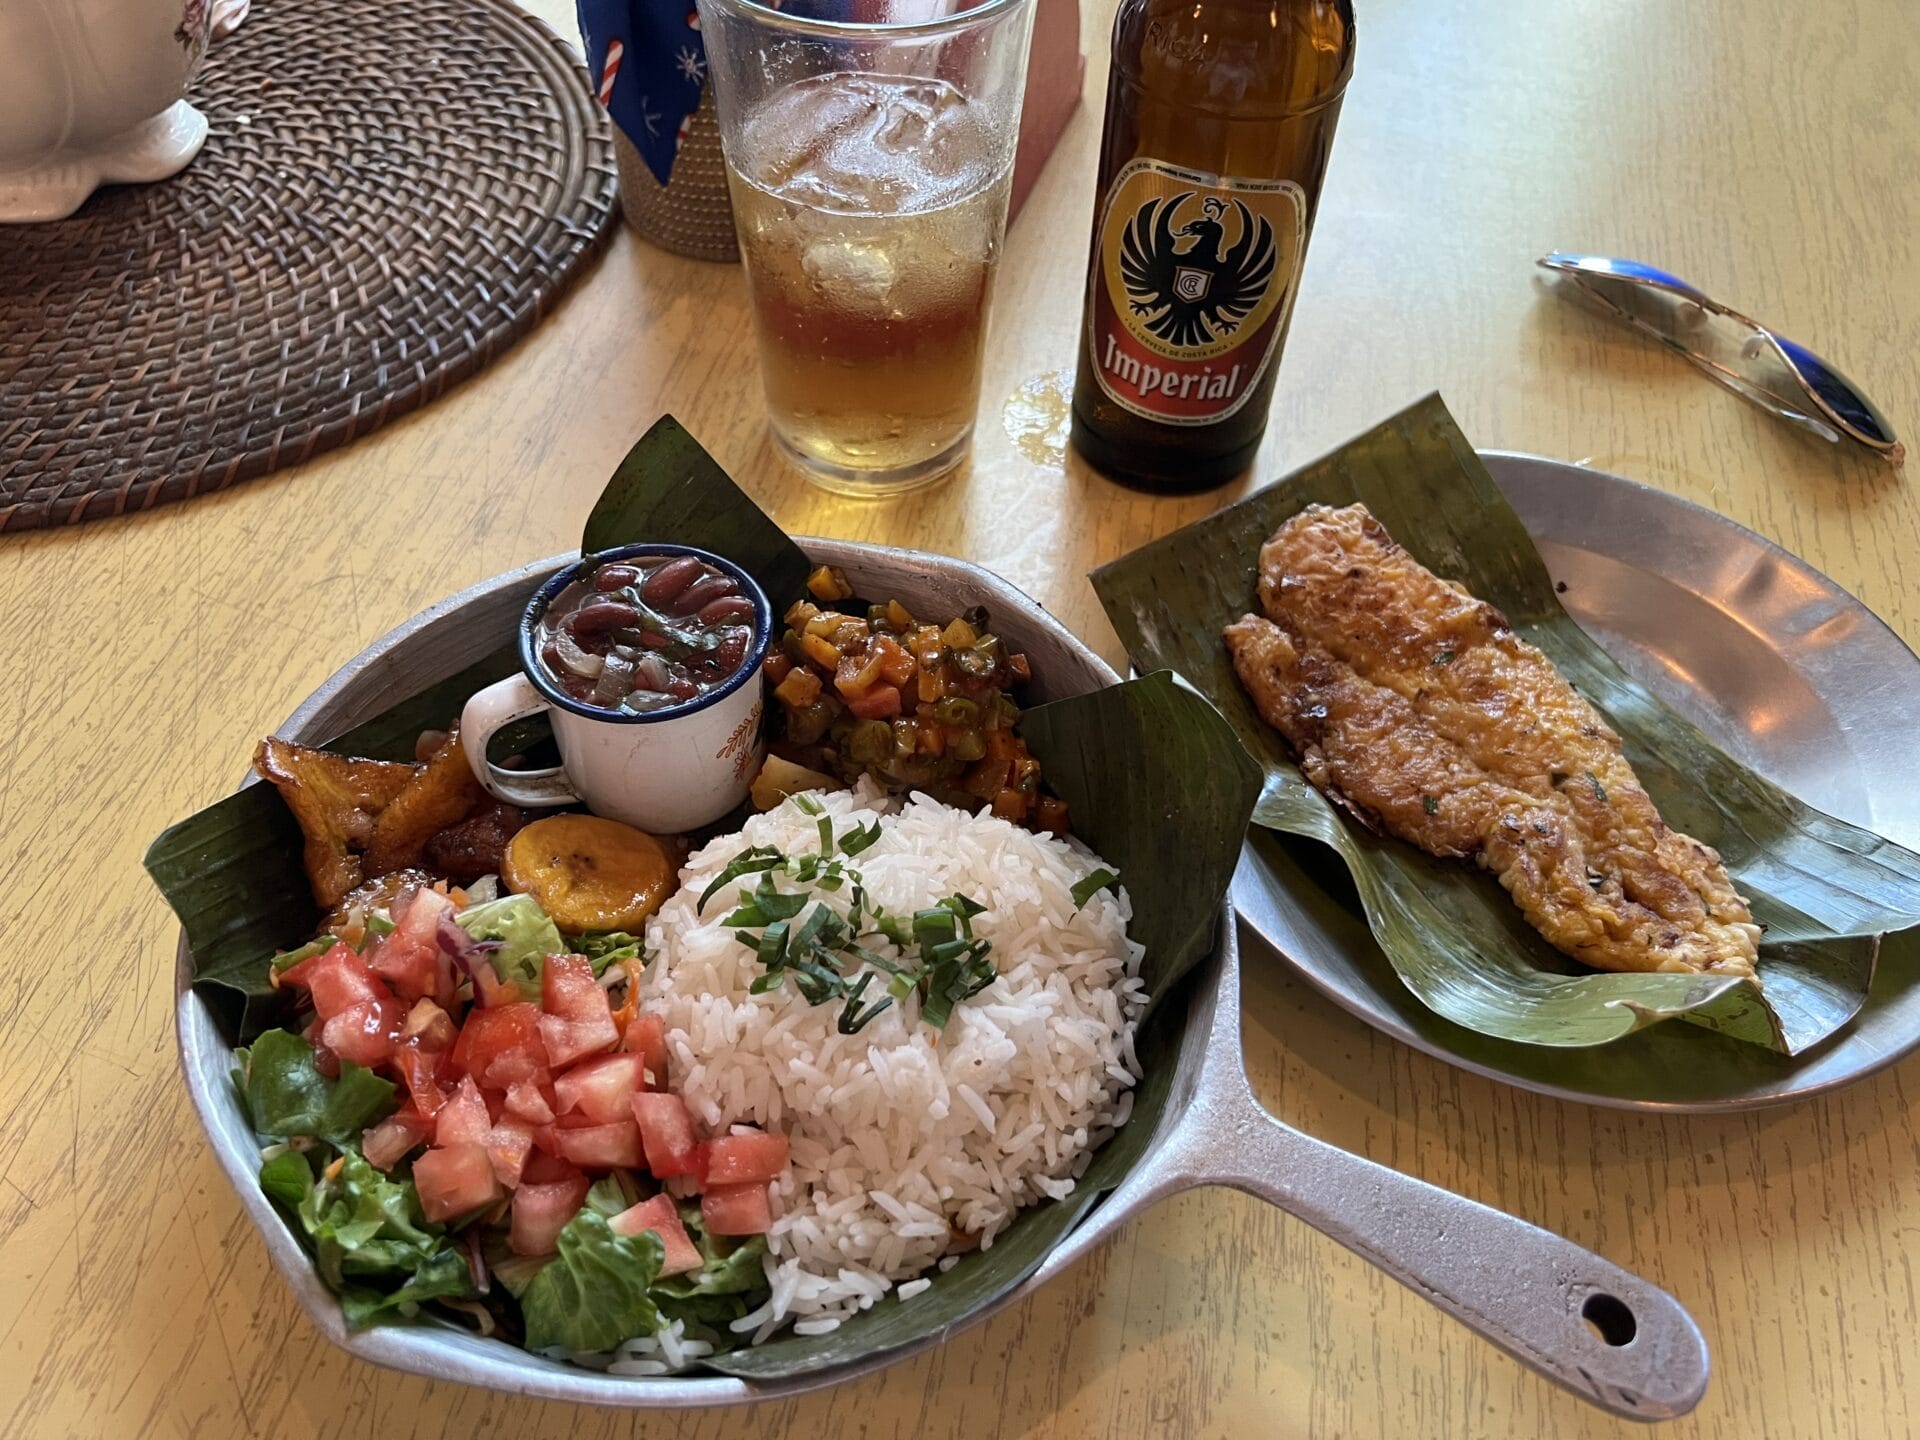 Eine traditionelle costa-ricanische Mahlzeit mit Reis, Bohnen, Salat, frittierten Kochbananen und Fisch, serviert auf einem Metallteller, dazu eine Flasche Imperial-Bier.